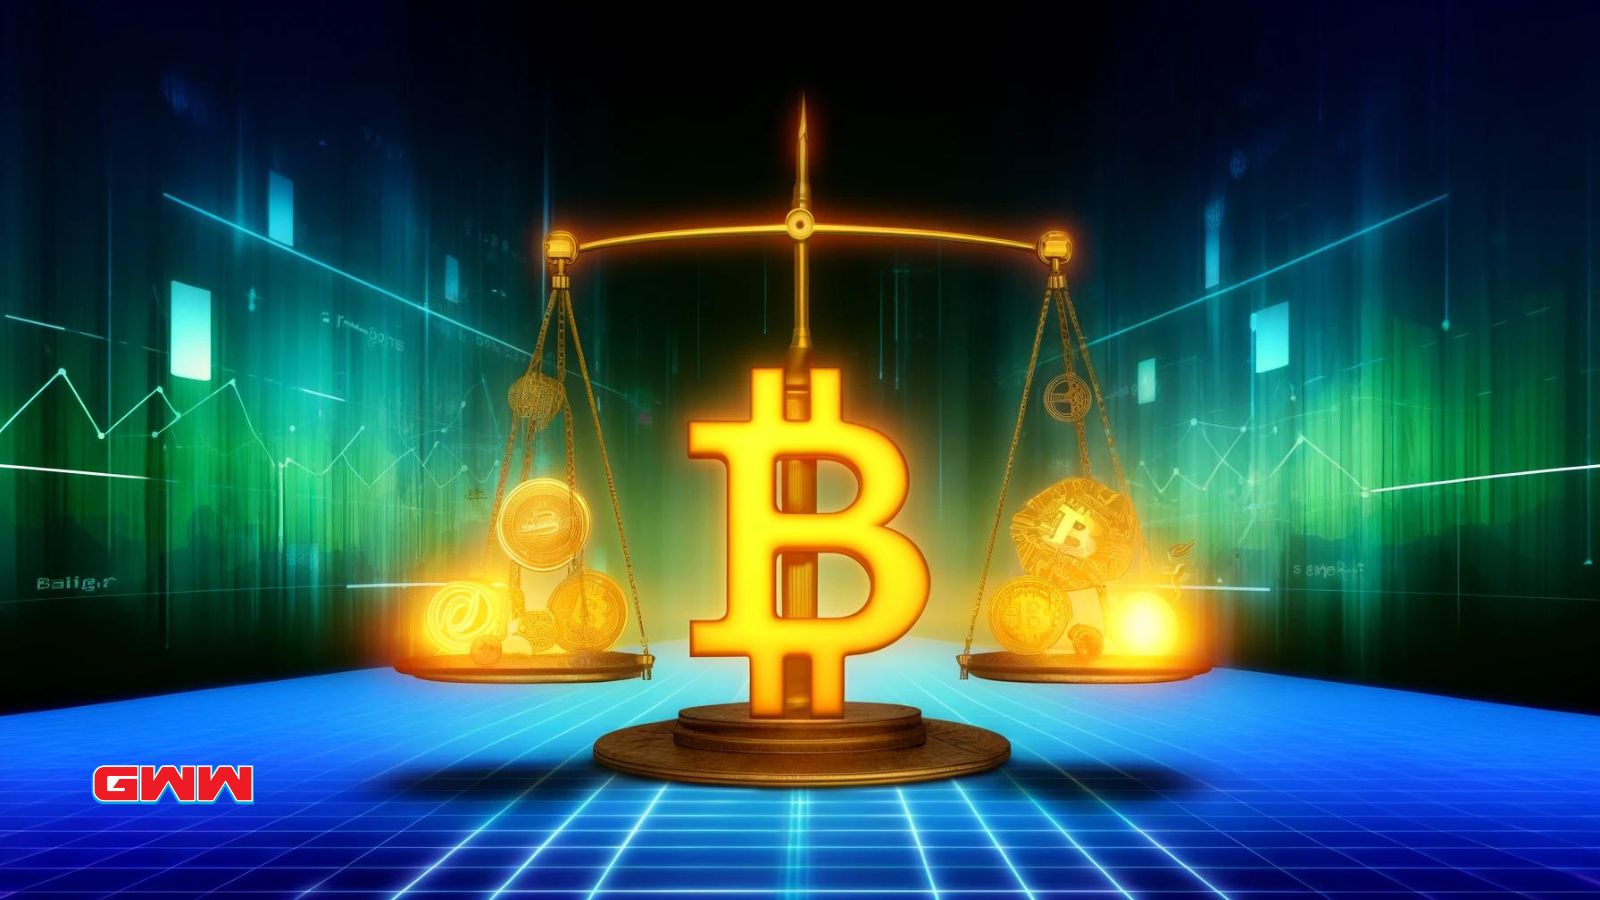 Digital scale balancing Bitcoin and financial symbols